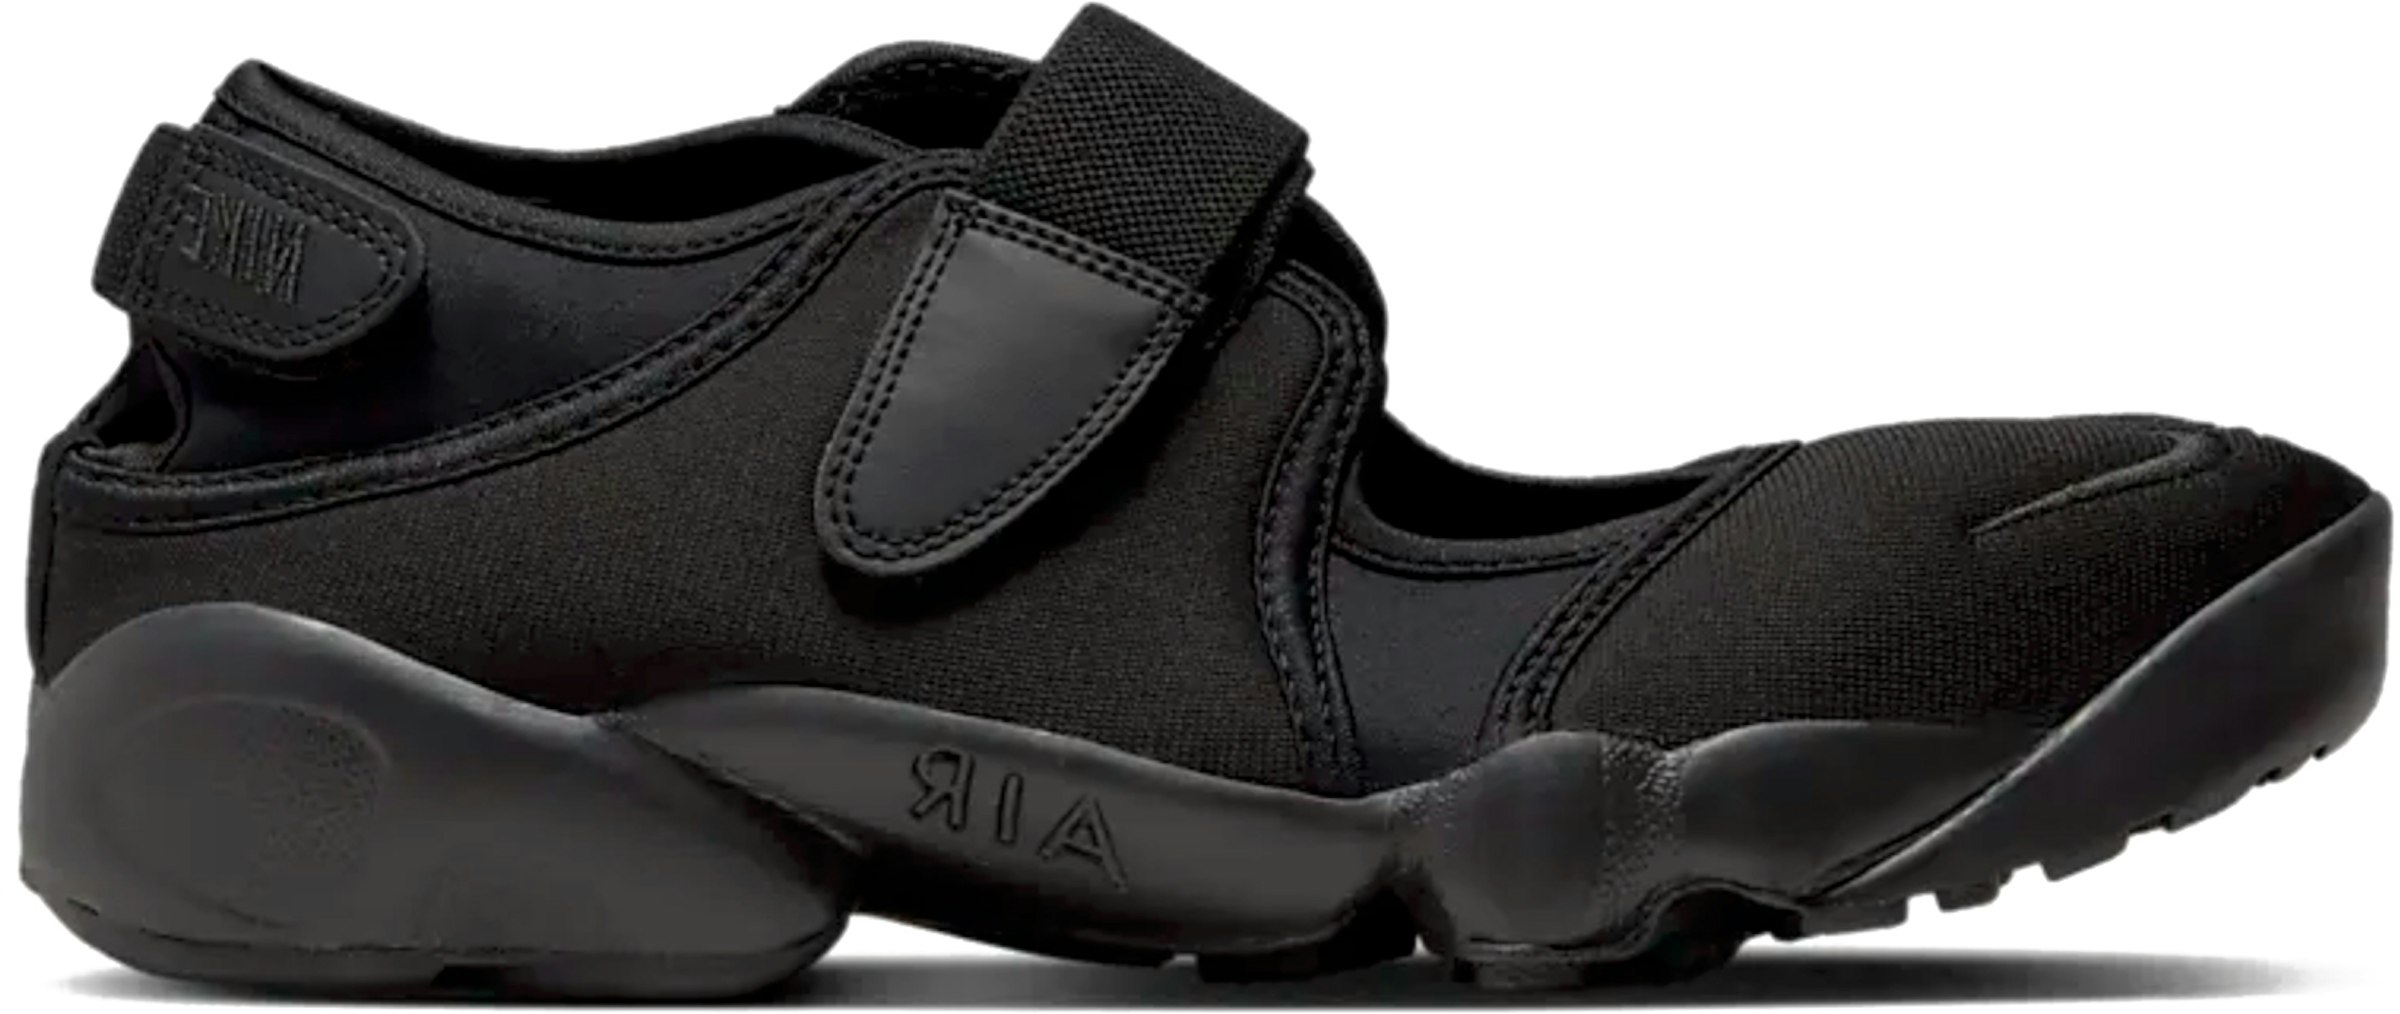 Nike Air Rift Triple Black (Women's) - DZ4182-010